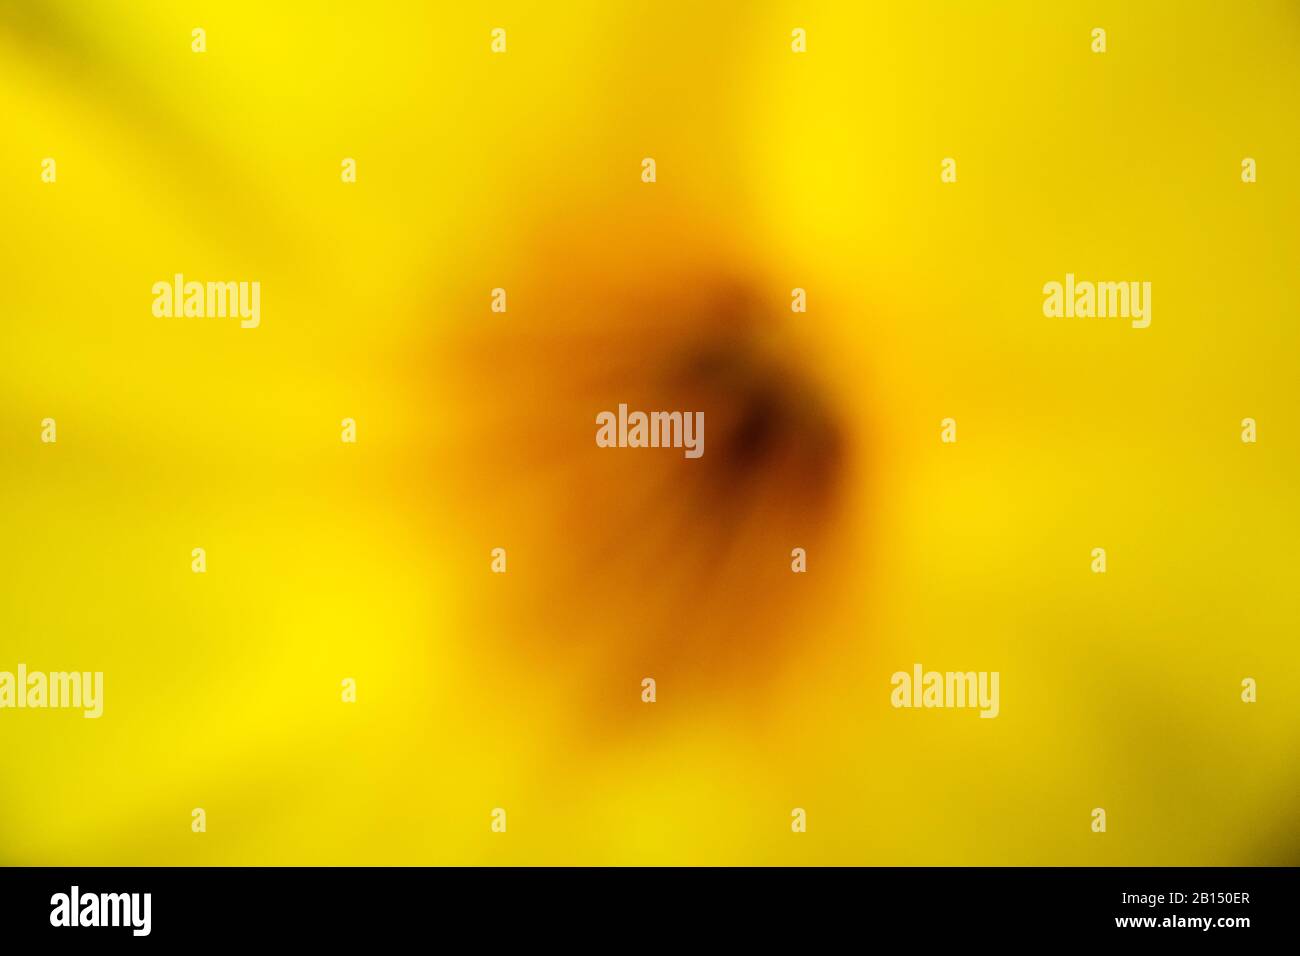 sfondo astratto : estate colori colorati tonalità sognanti bella giallo fiore gradazione di colore con polline sfondo sfocato Foto Stock